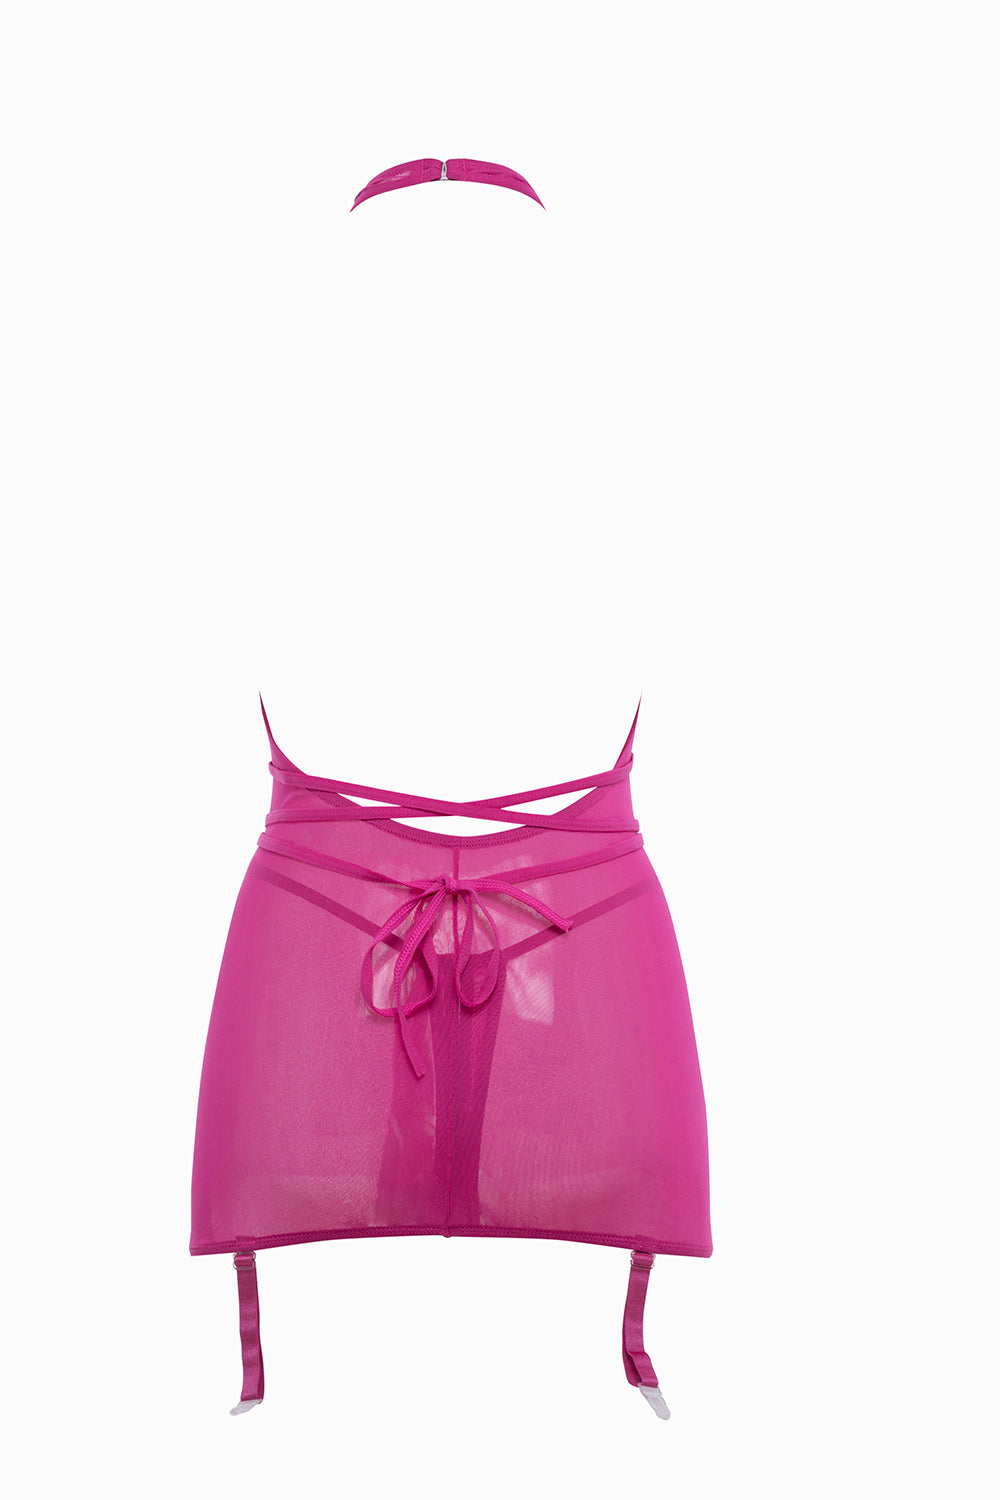 Allure Collection Savannah Sheer Mesh Garter Dress & Open Thong Hot Pink